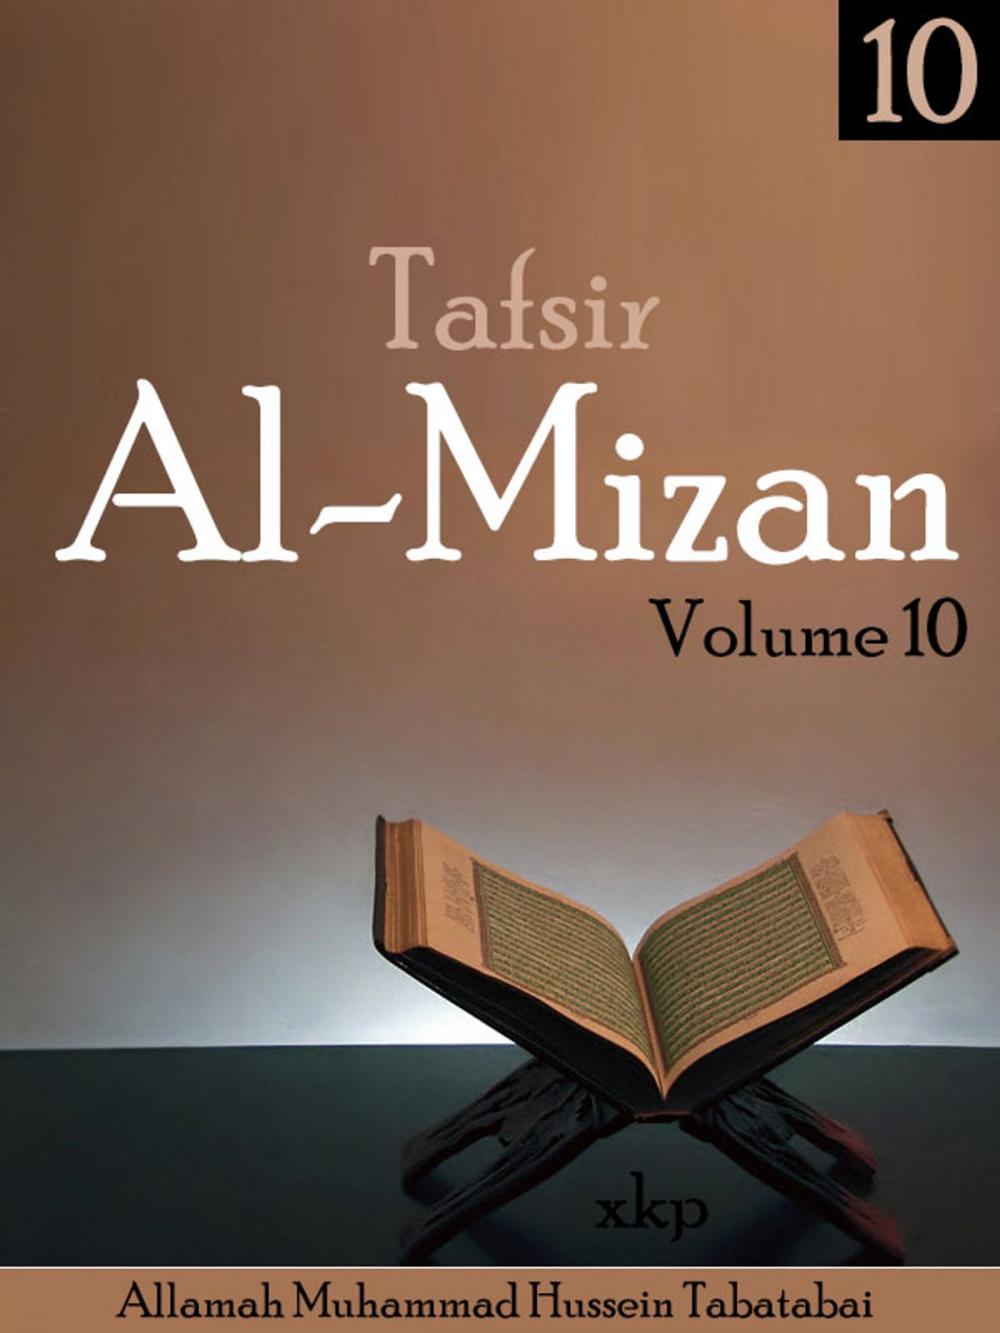 Big bigCover of Tafsir Al Mizan Vol 10